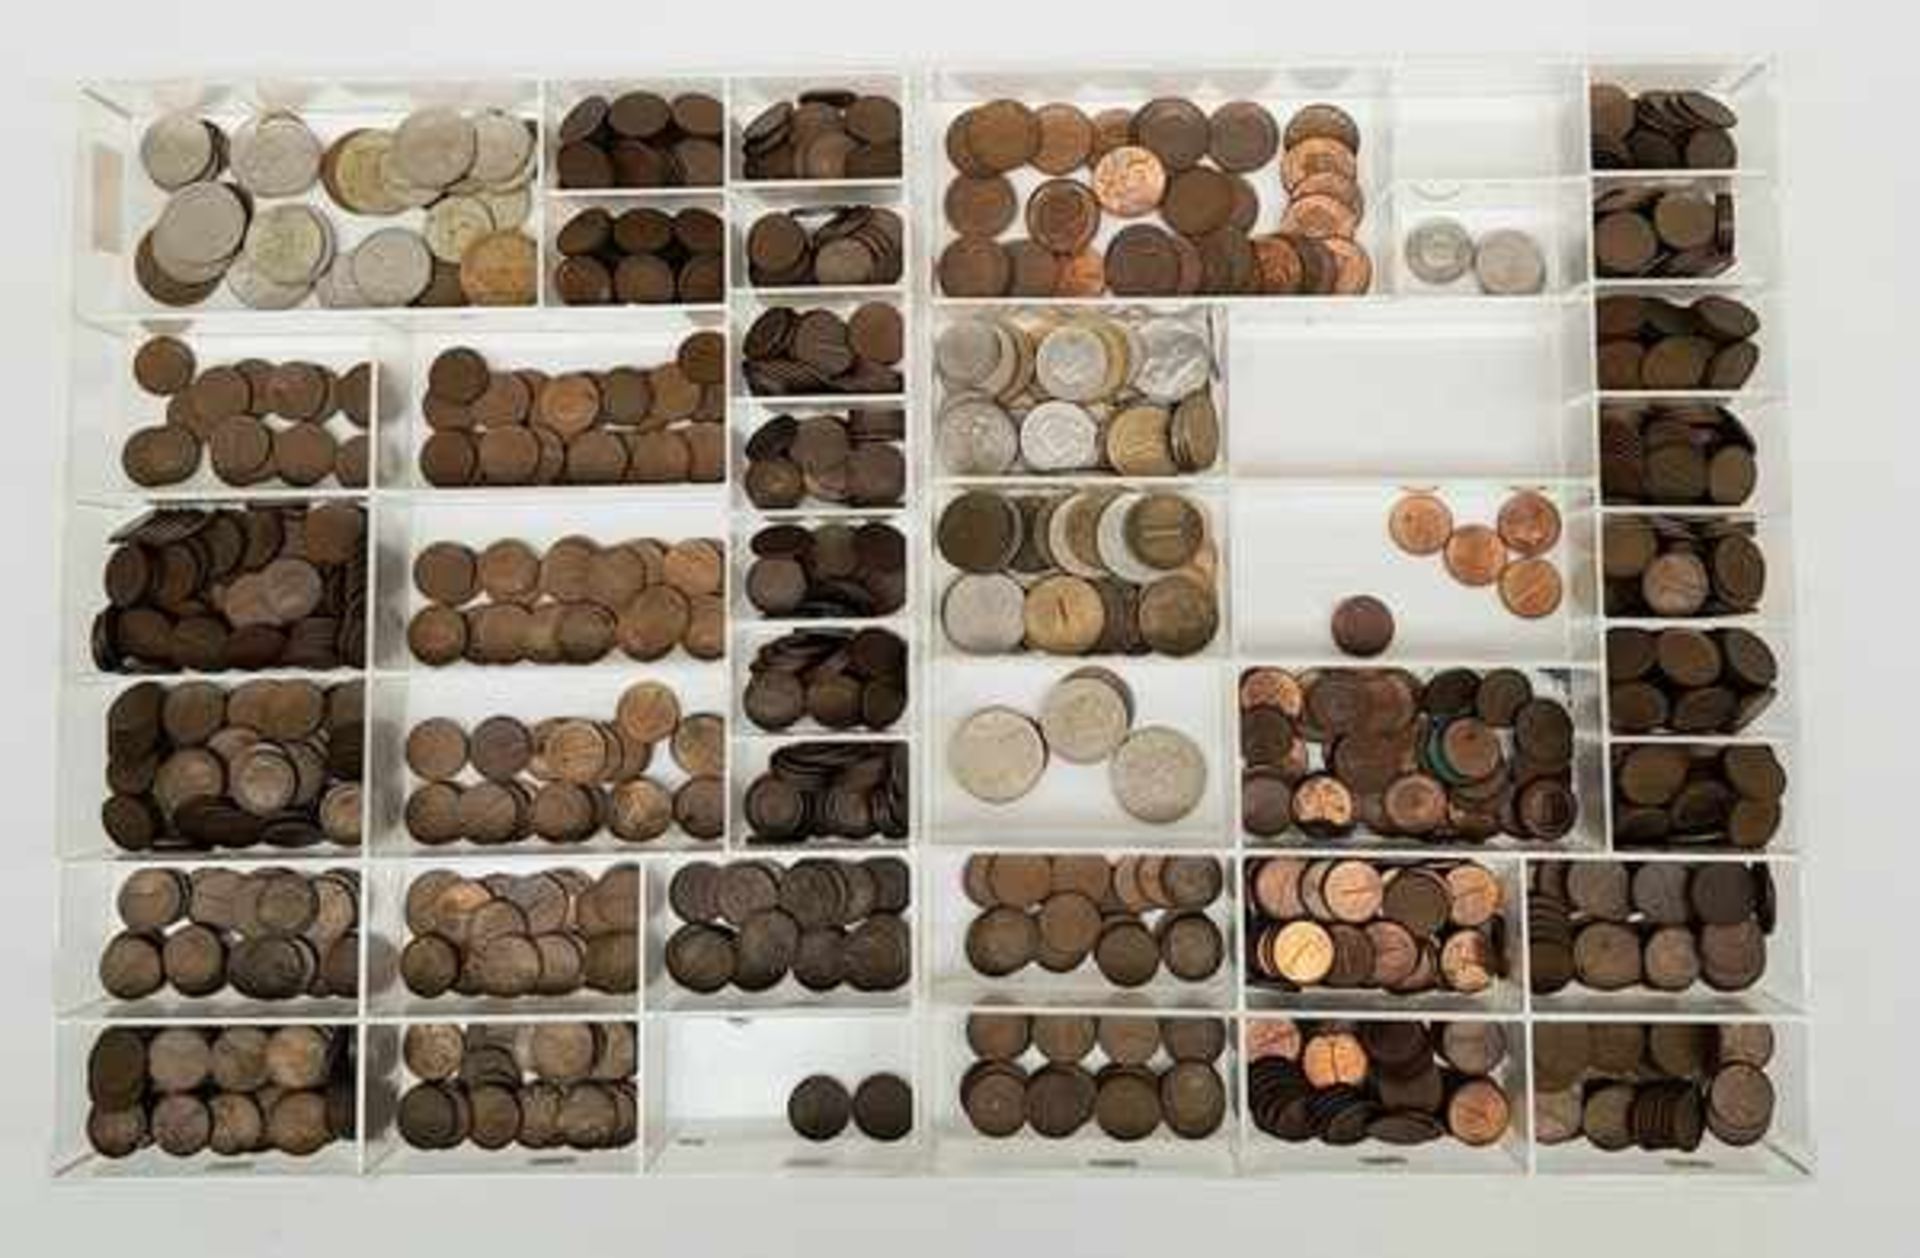 (Numismatiek) Centen, stuivers en buitenlands geldDiverse munten, grotendeels centen en stuivers.